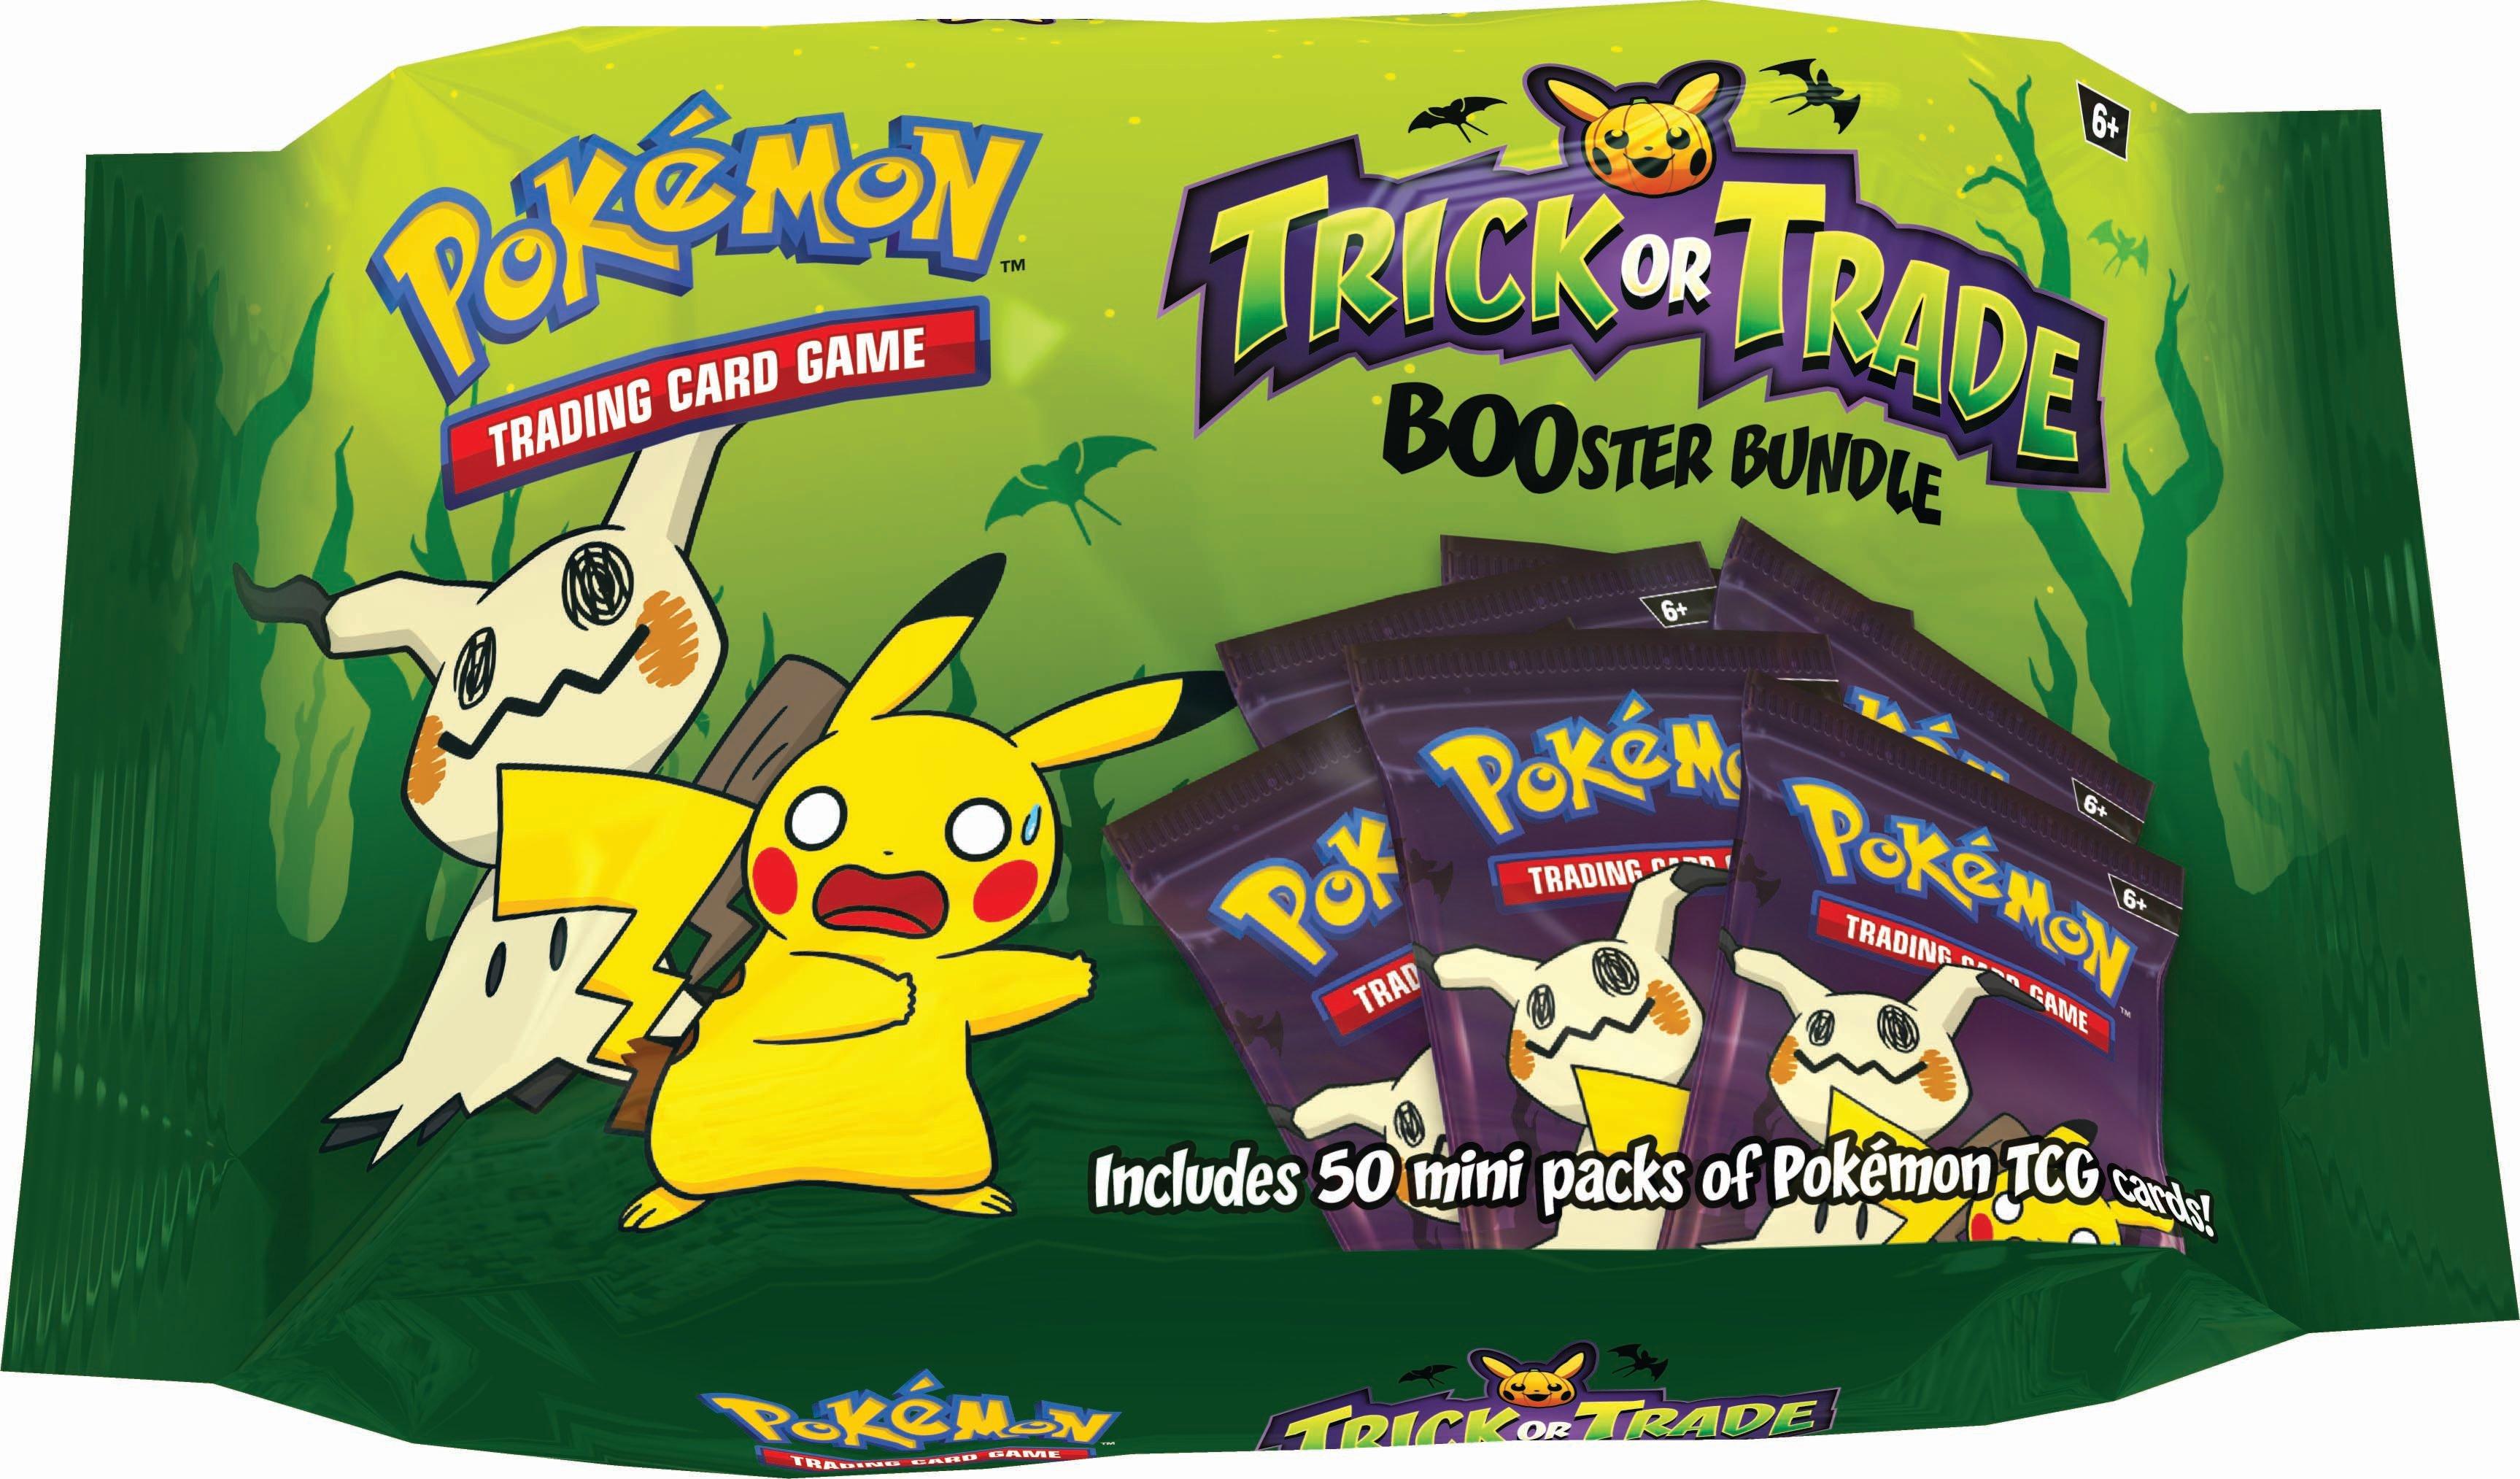 UNBELIEVABLE! GameStop's EPIC Pokémon Cards Sale - BUY 2, GET 1 FREE! 